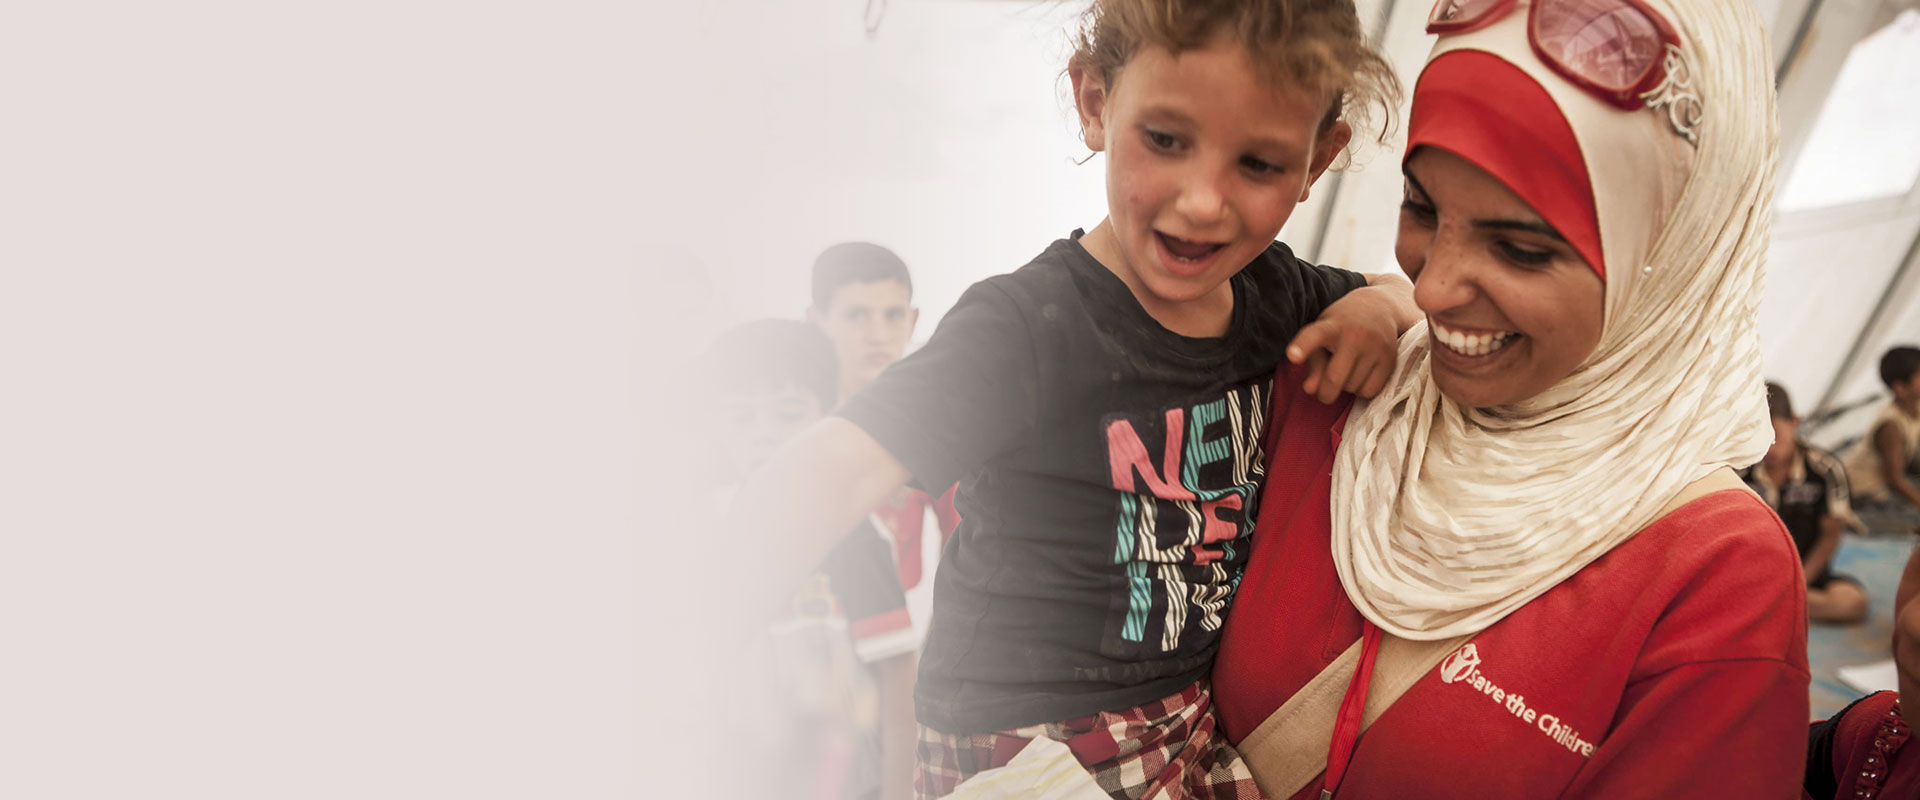 Redd Barna-ansatt holder et smilende barn i armene